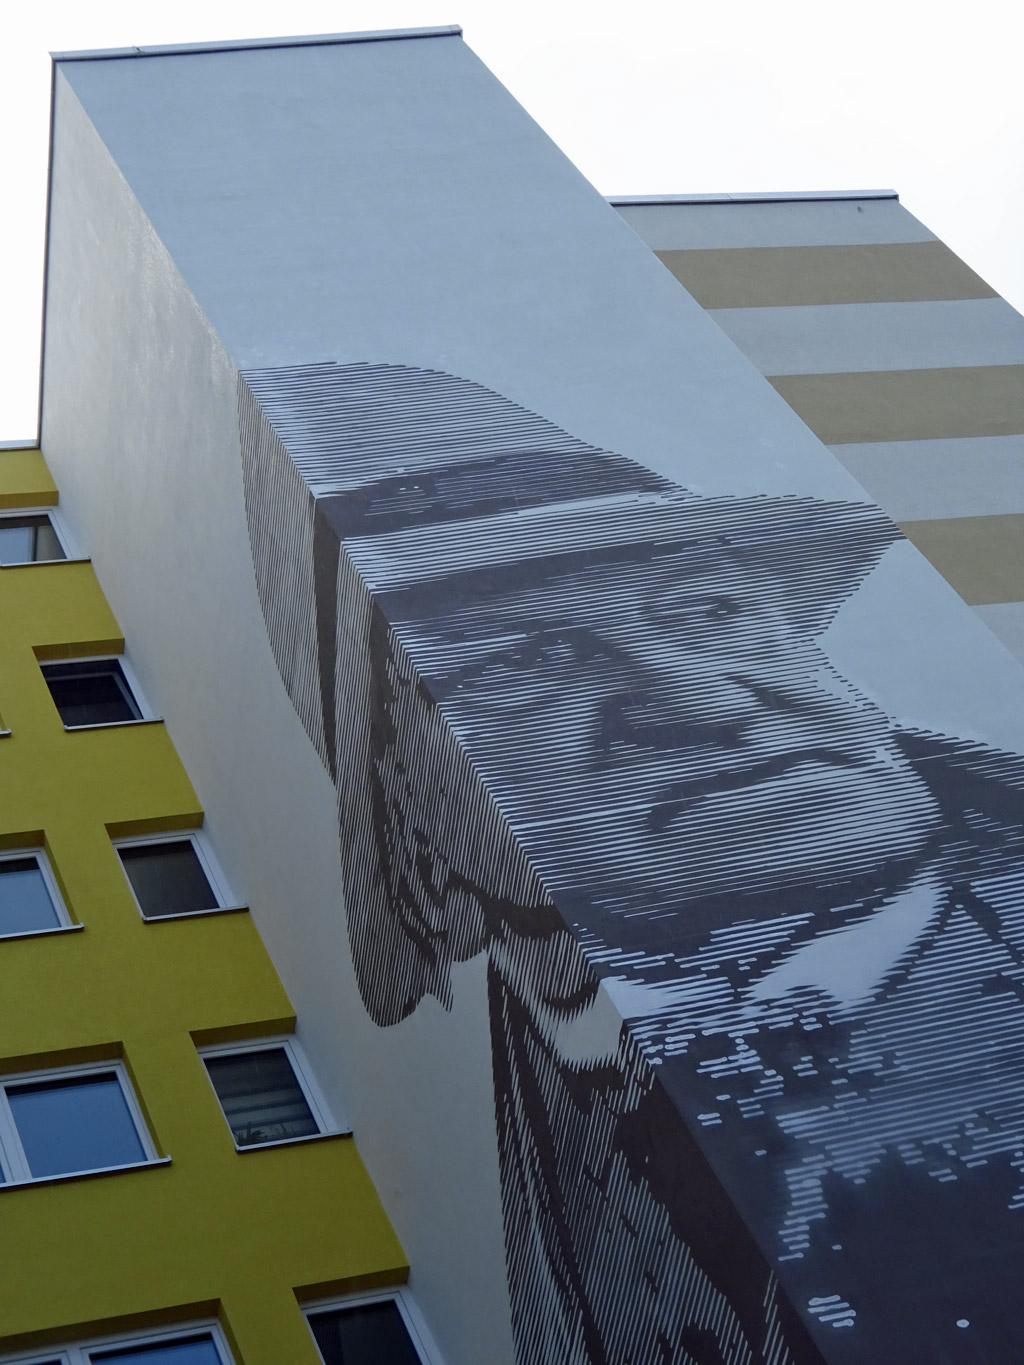 Fotorealistisches schwarz-weiß-Portrait von Gerhart Hauptmann an Wohnhochhaus in Frankfurt-Niederursel